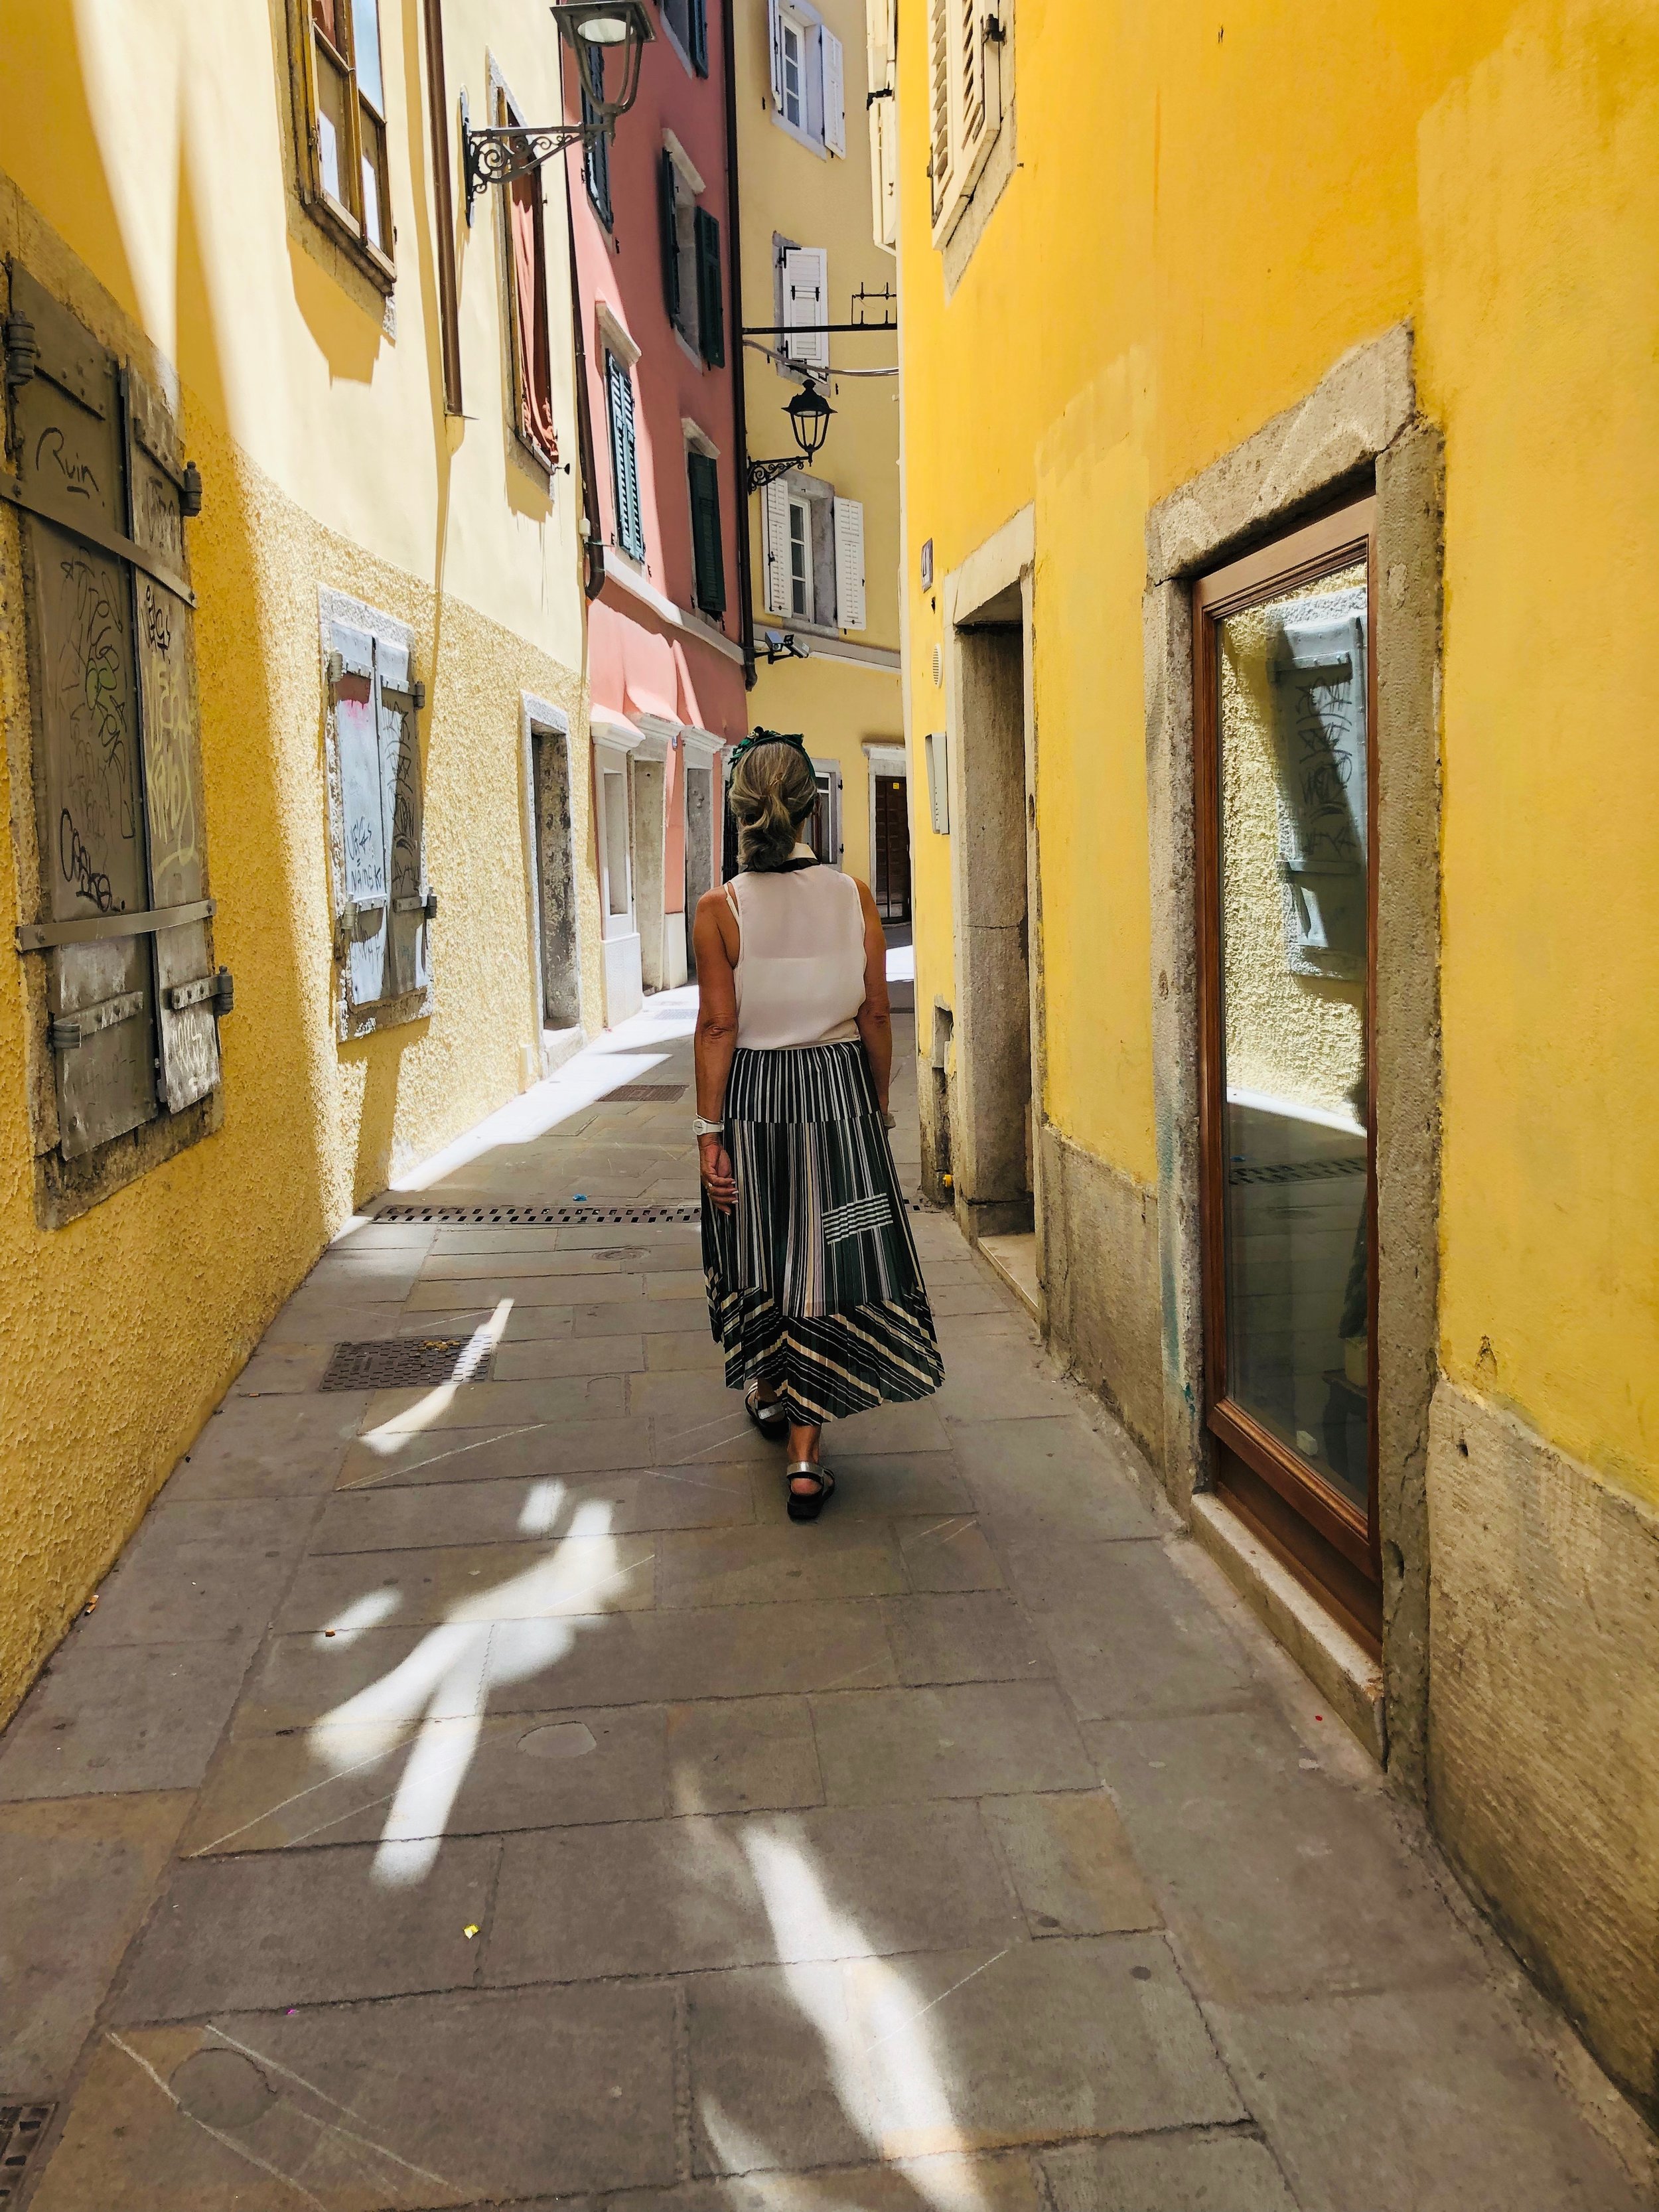 Colourful alleyways in Trieste.